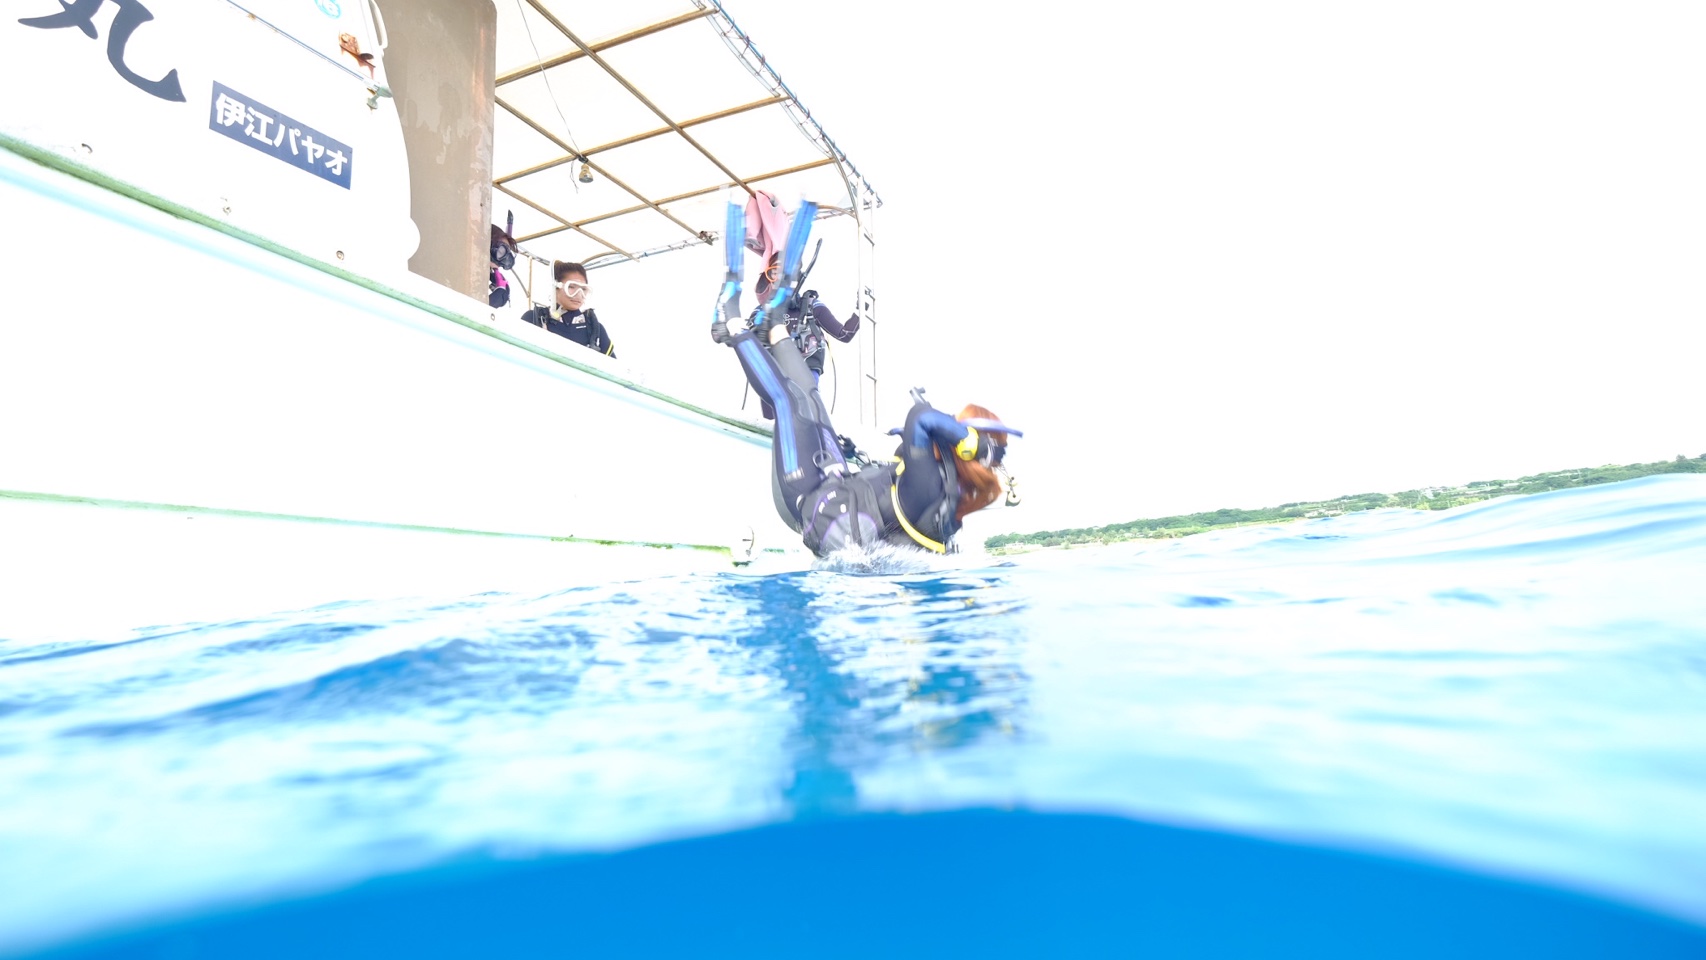 船のヘリに腰を掛けた器材を背負ったダイバーが、背中から海へ落ちる様子。